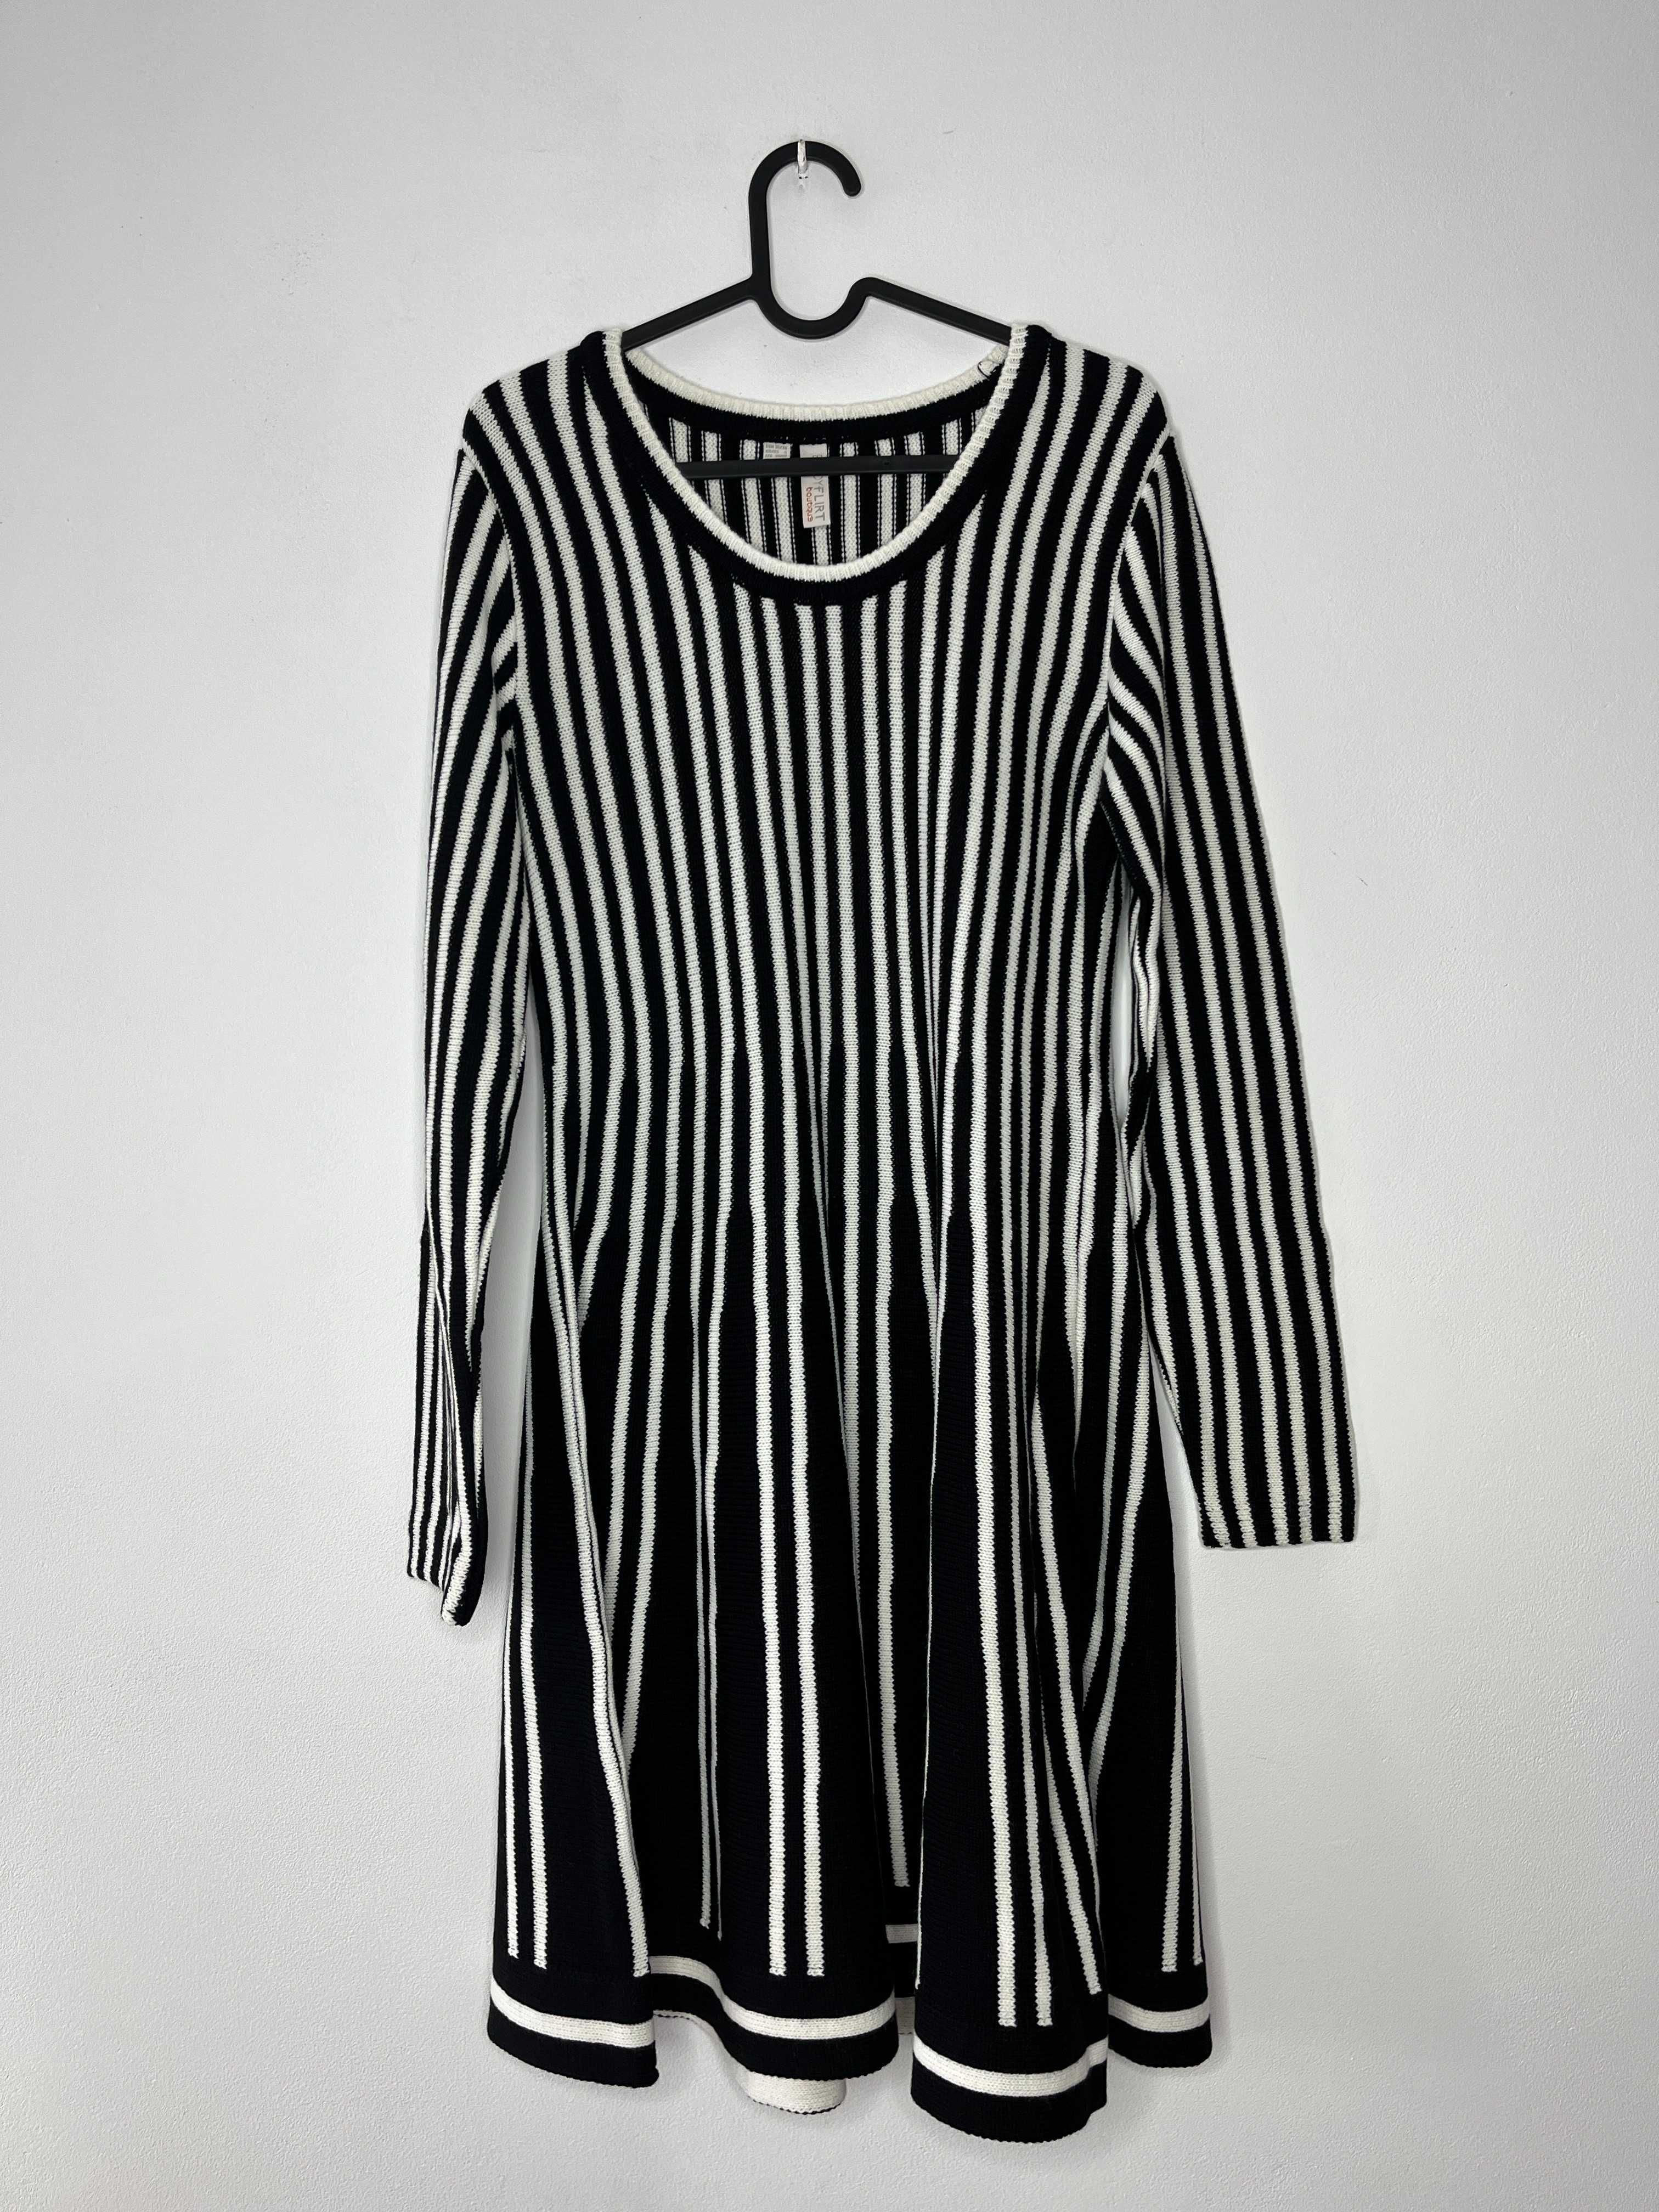 Czarno biała sukienka dzianinowa trapezowa w paski Bonprix rozmiar S